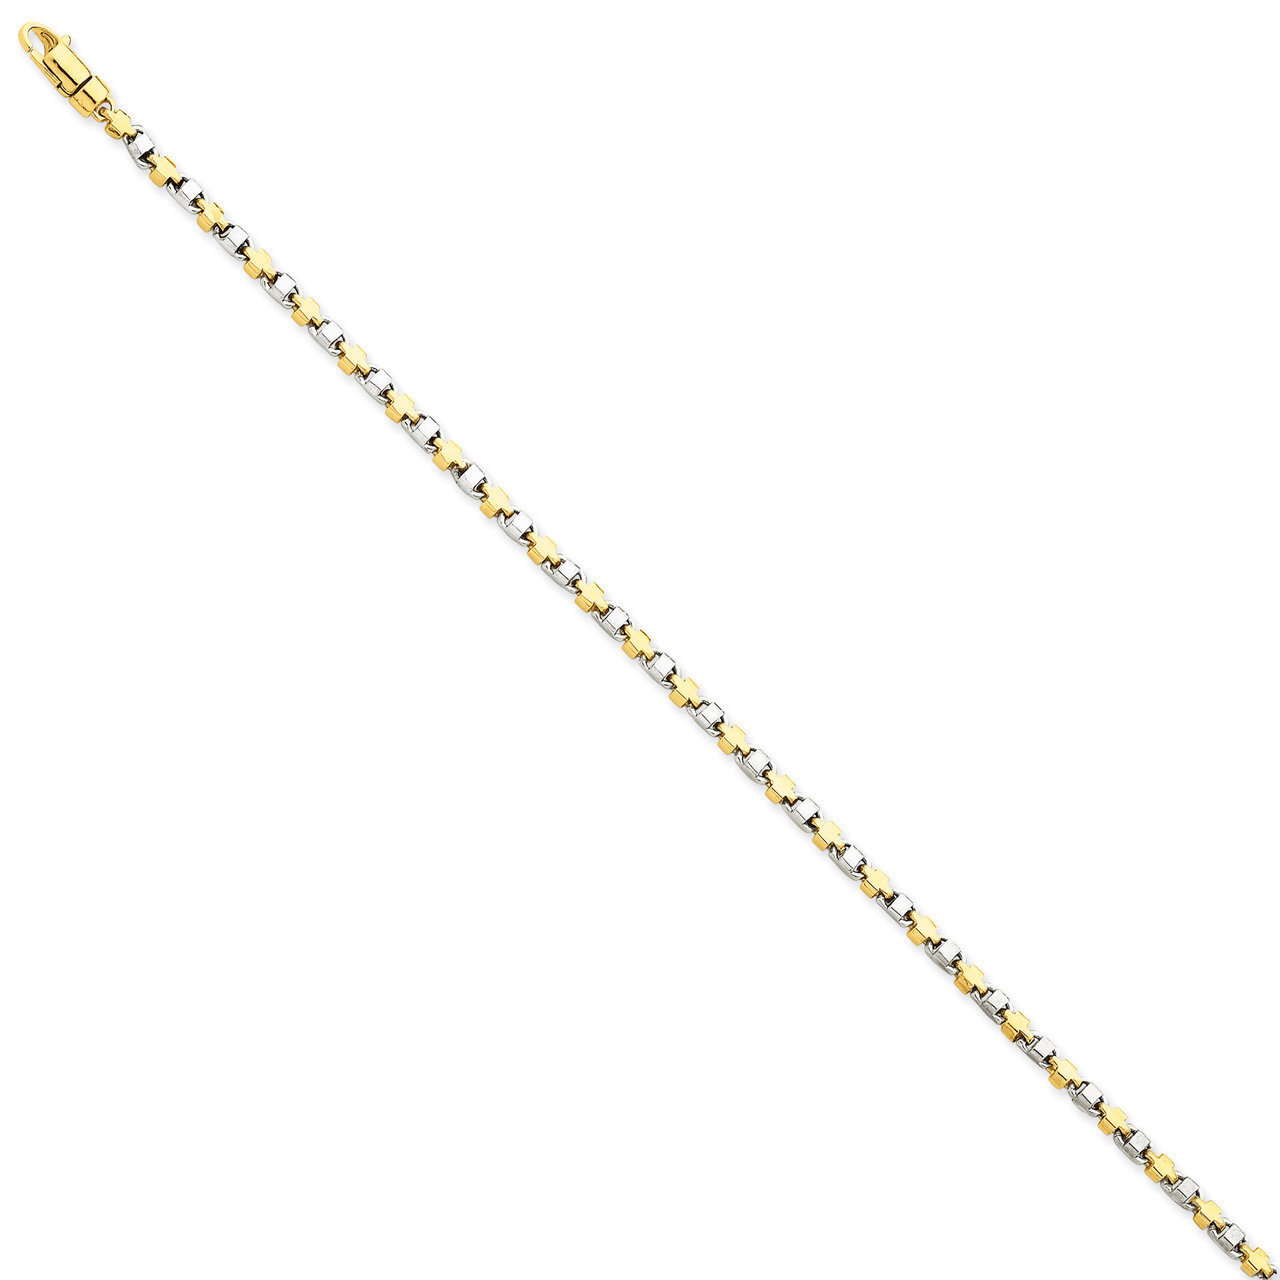 2.5mm Fancy Link Chain 24 Inch 14k Two-Tone Gold LK695-24